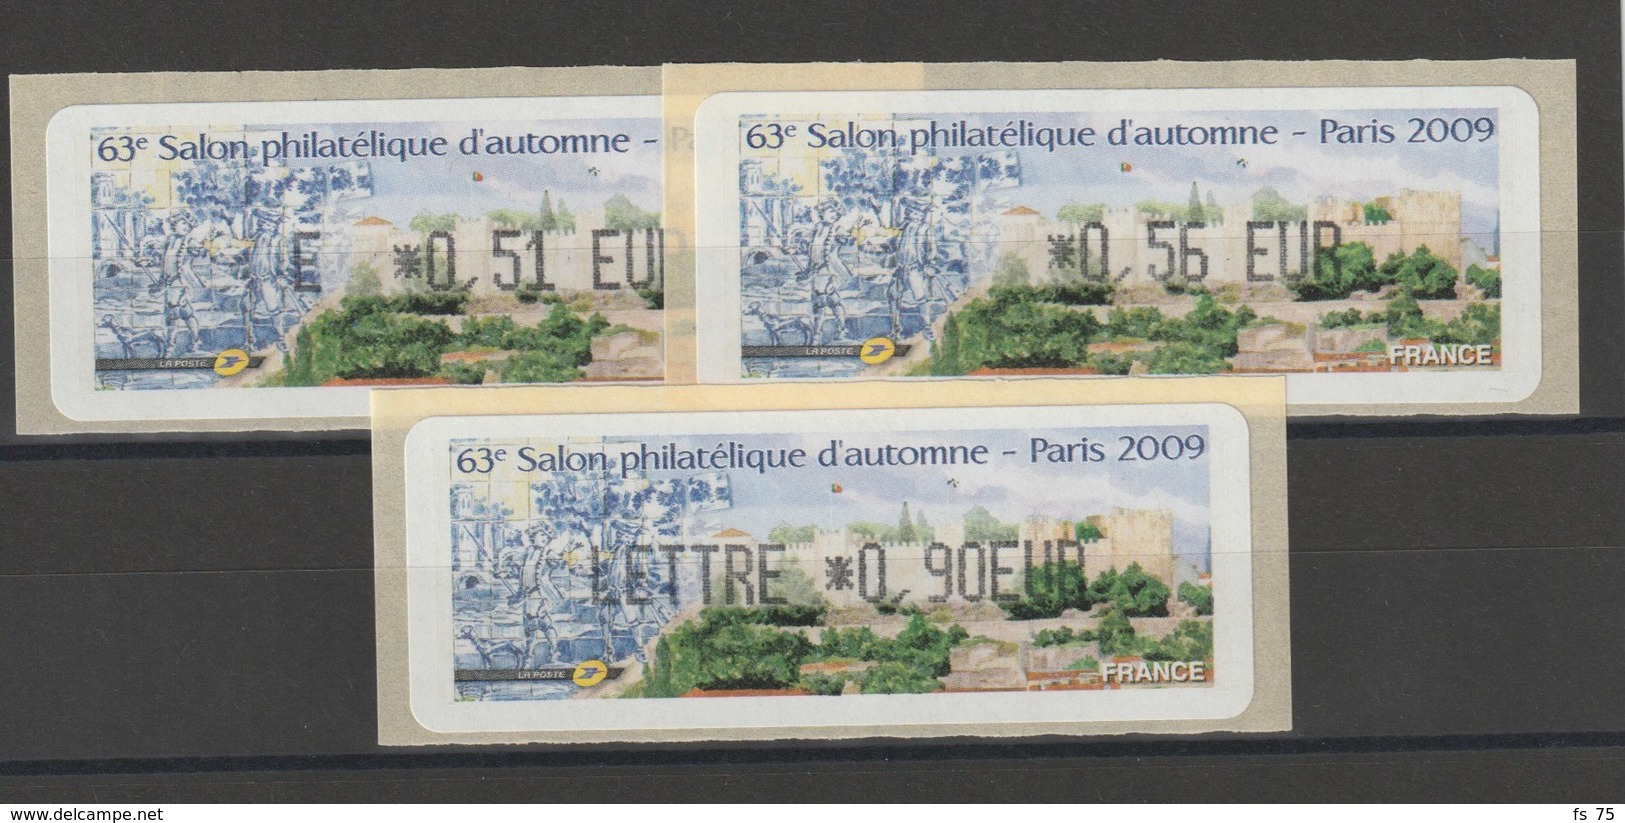 FRANCE - 3 VIGNETTES 0,51€, 0,56€ ET 0,90€ - 63E SALON PHILATELIQUE D'AUTOMNE - PARIS 2009 - 1999-2009 Illustrated Franking Labels